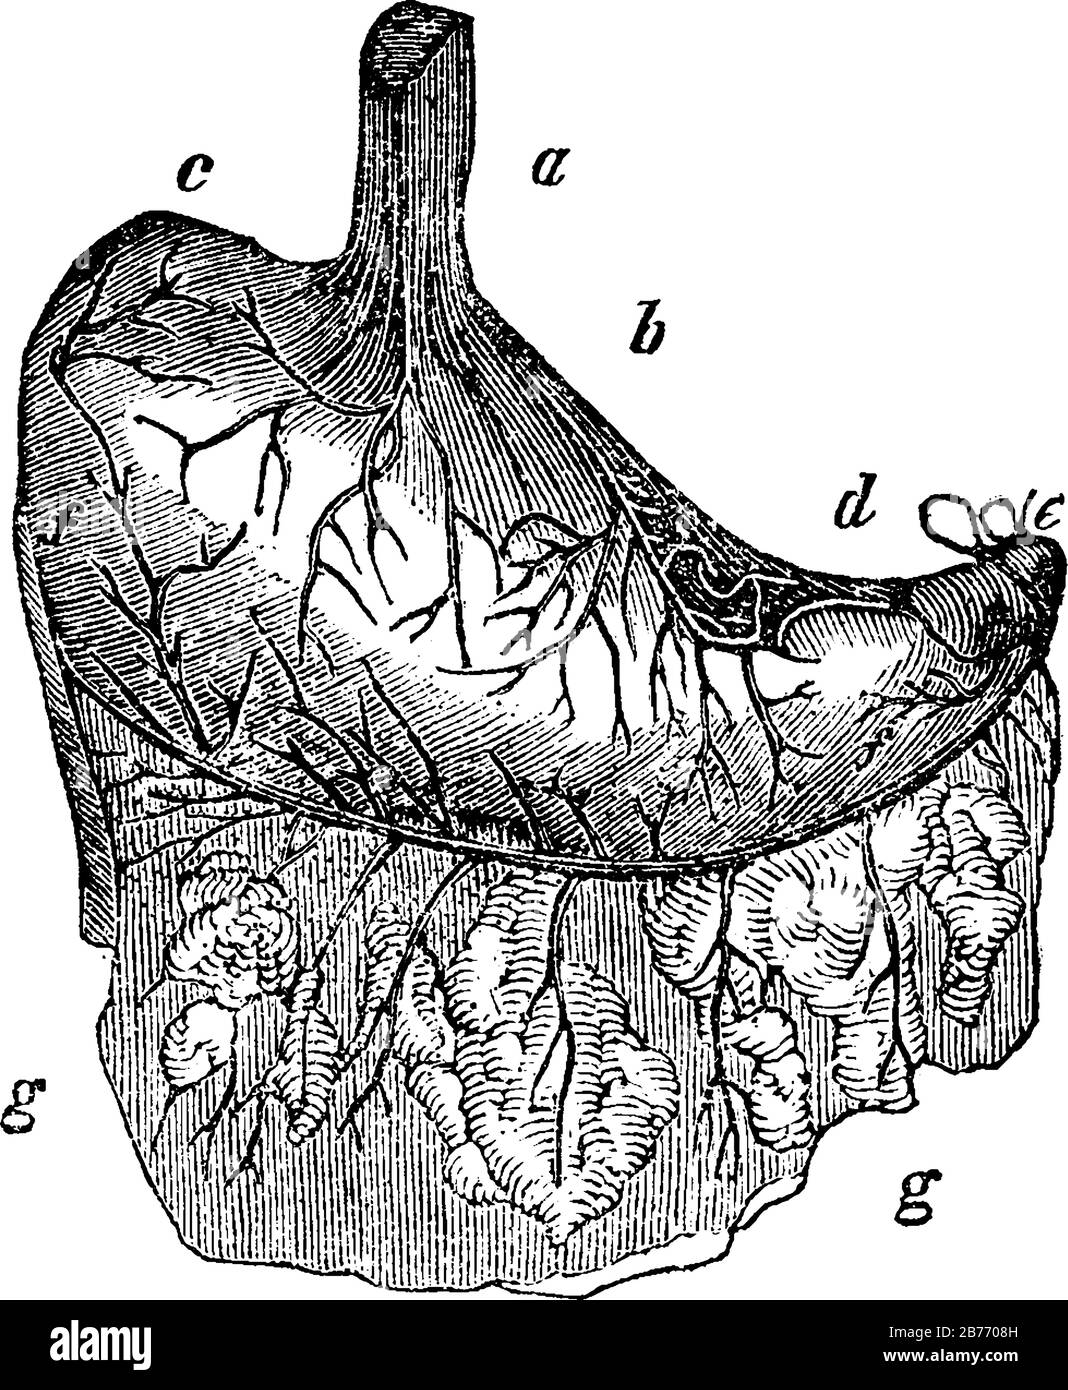 Lo stomaco umano. Etichette: A, esofago o calvo; b, parte cardiaca; c, estremità sinistra; d, estremità piccola; e, piloro legato; e-Th Illustrazione Vettoriale